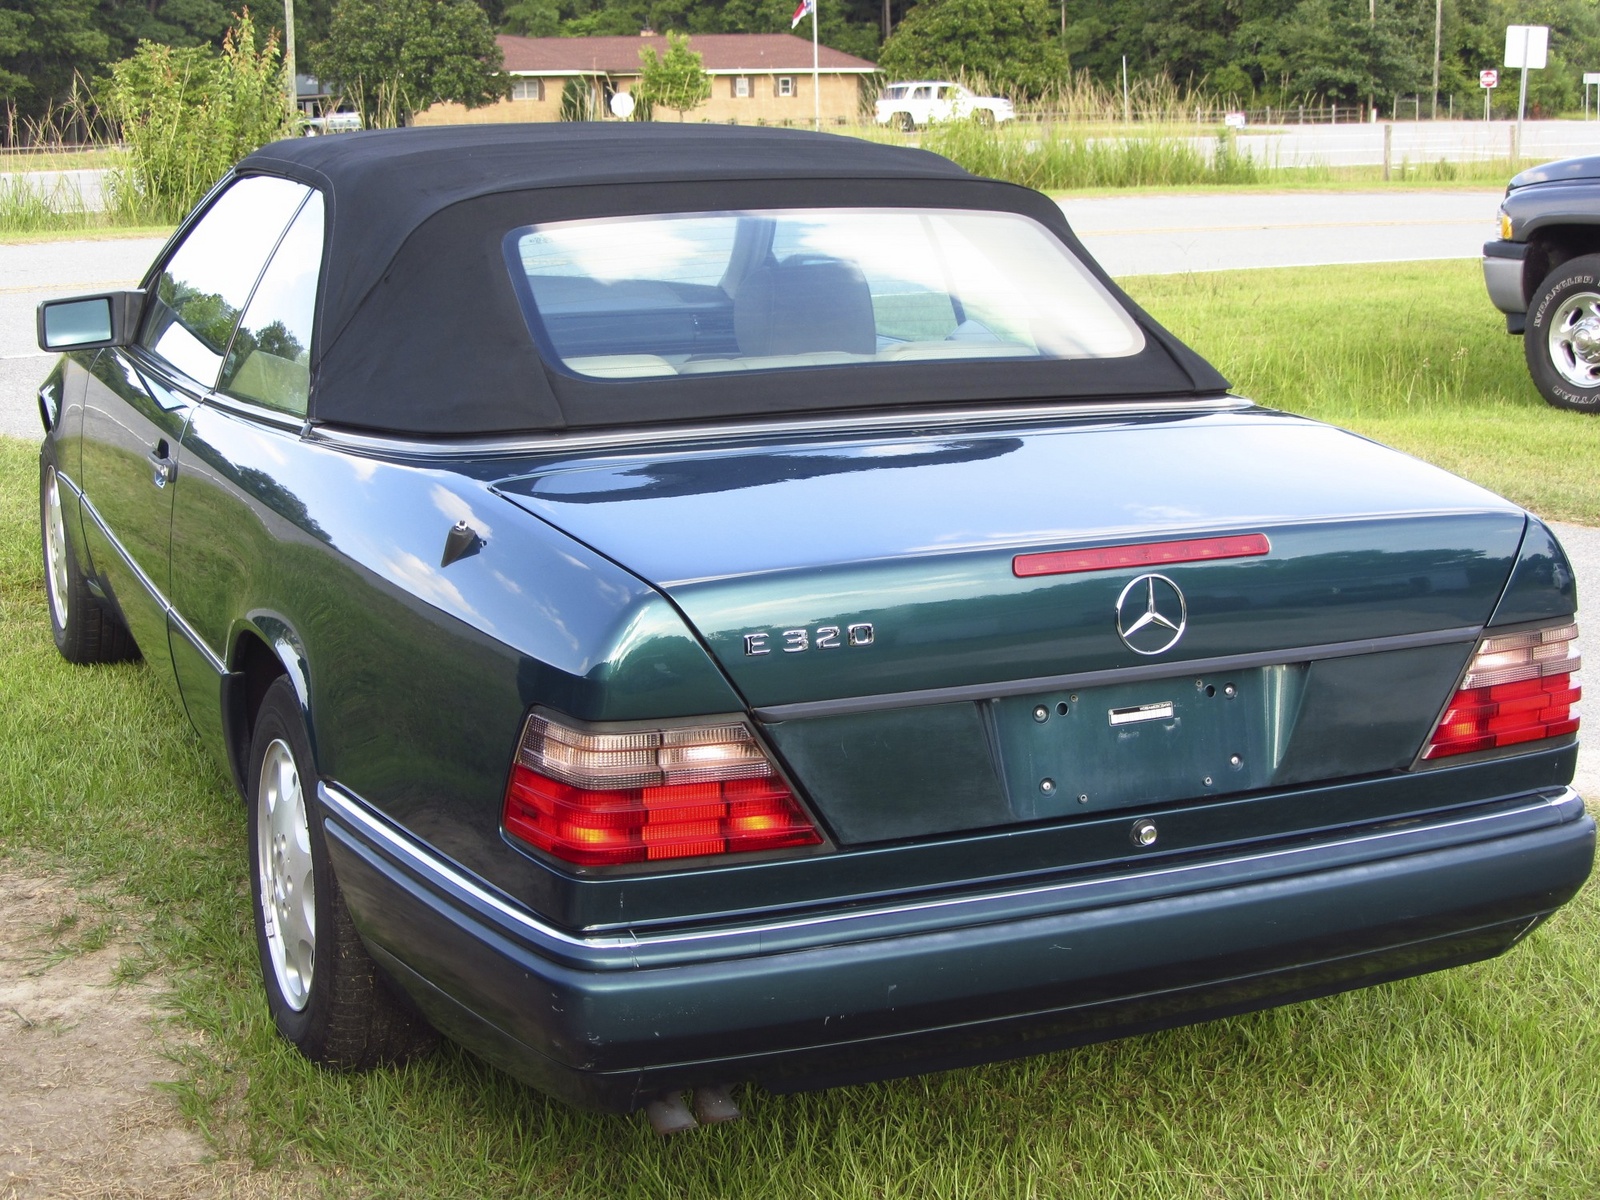 1995 Mercedes e320 cabriolet review #5